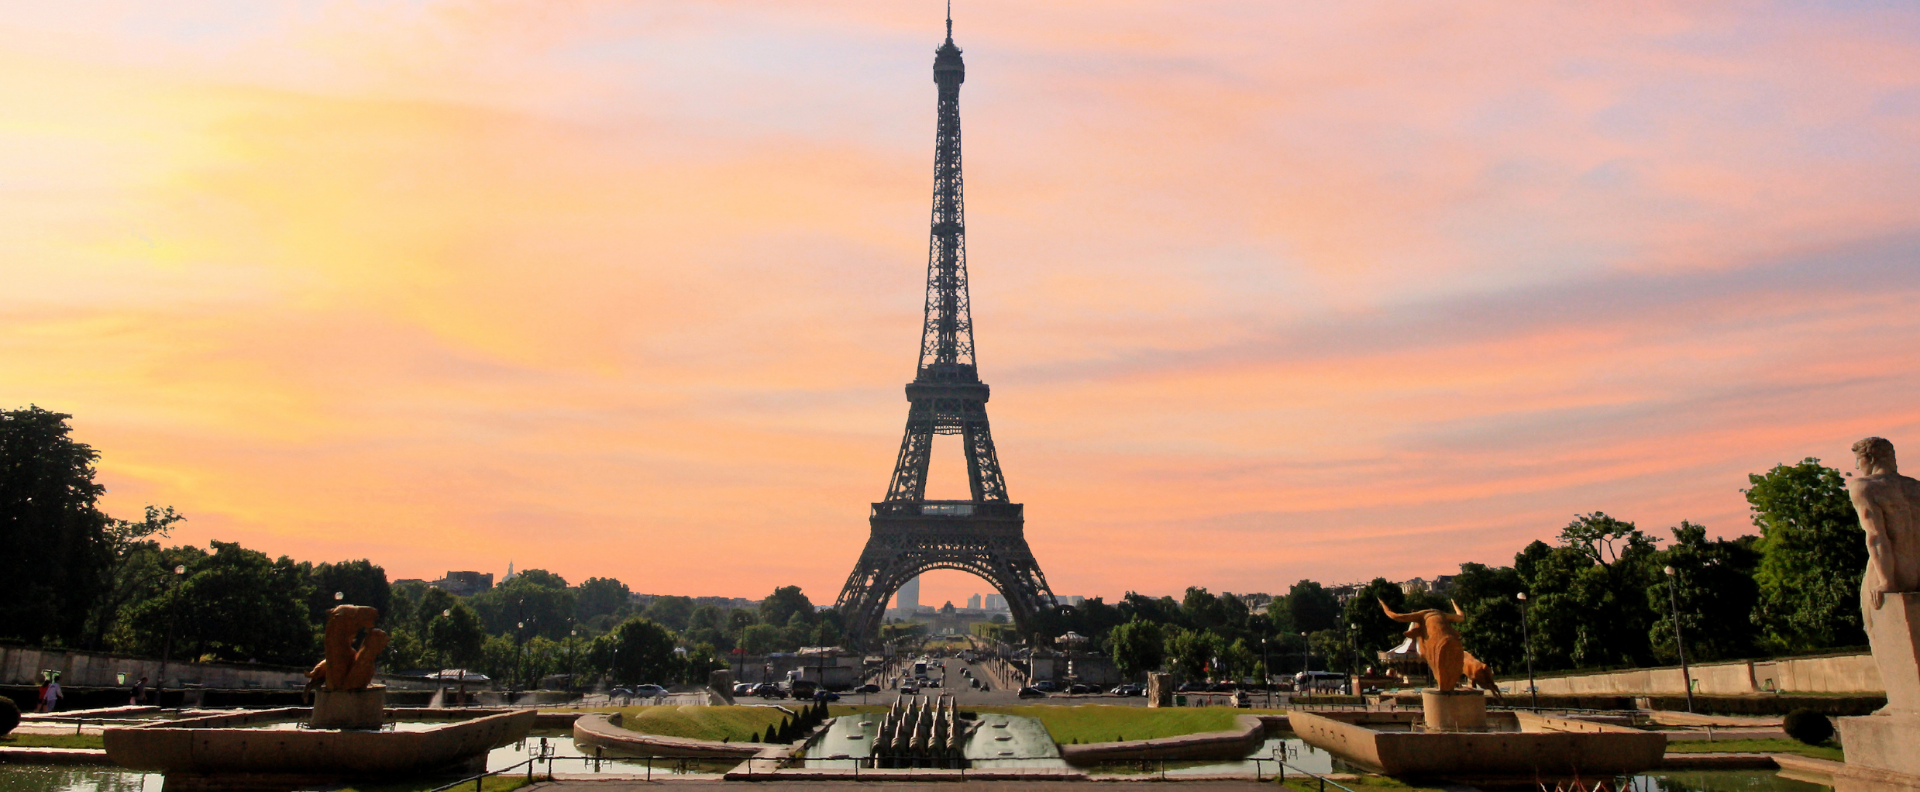 Dịch vụ làm visa Pháp trọn gói - Tỷ lệ đậu cao | Nowtadi